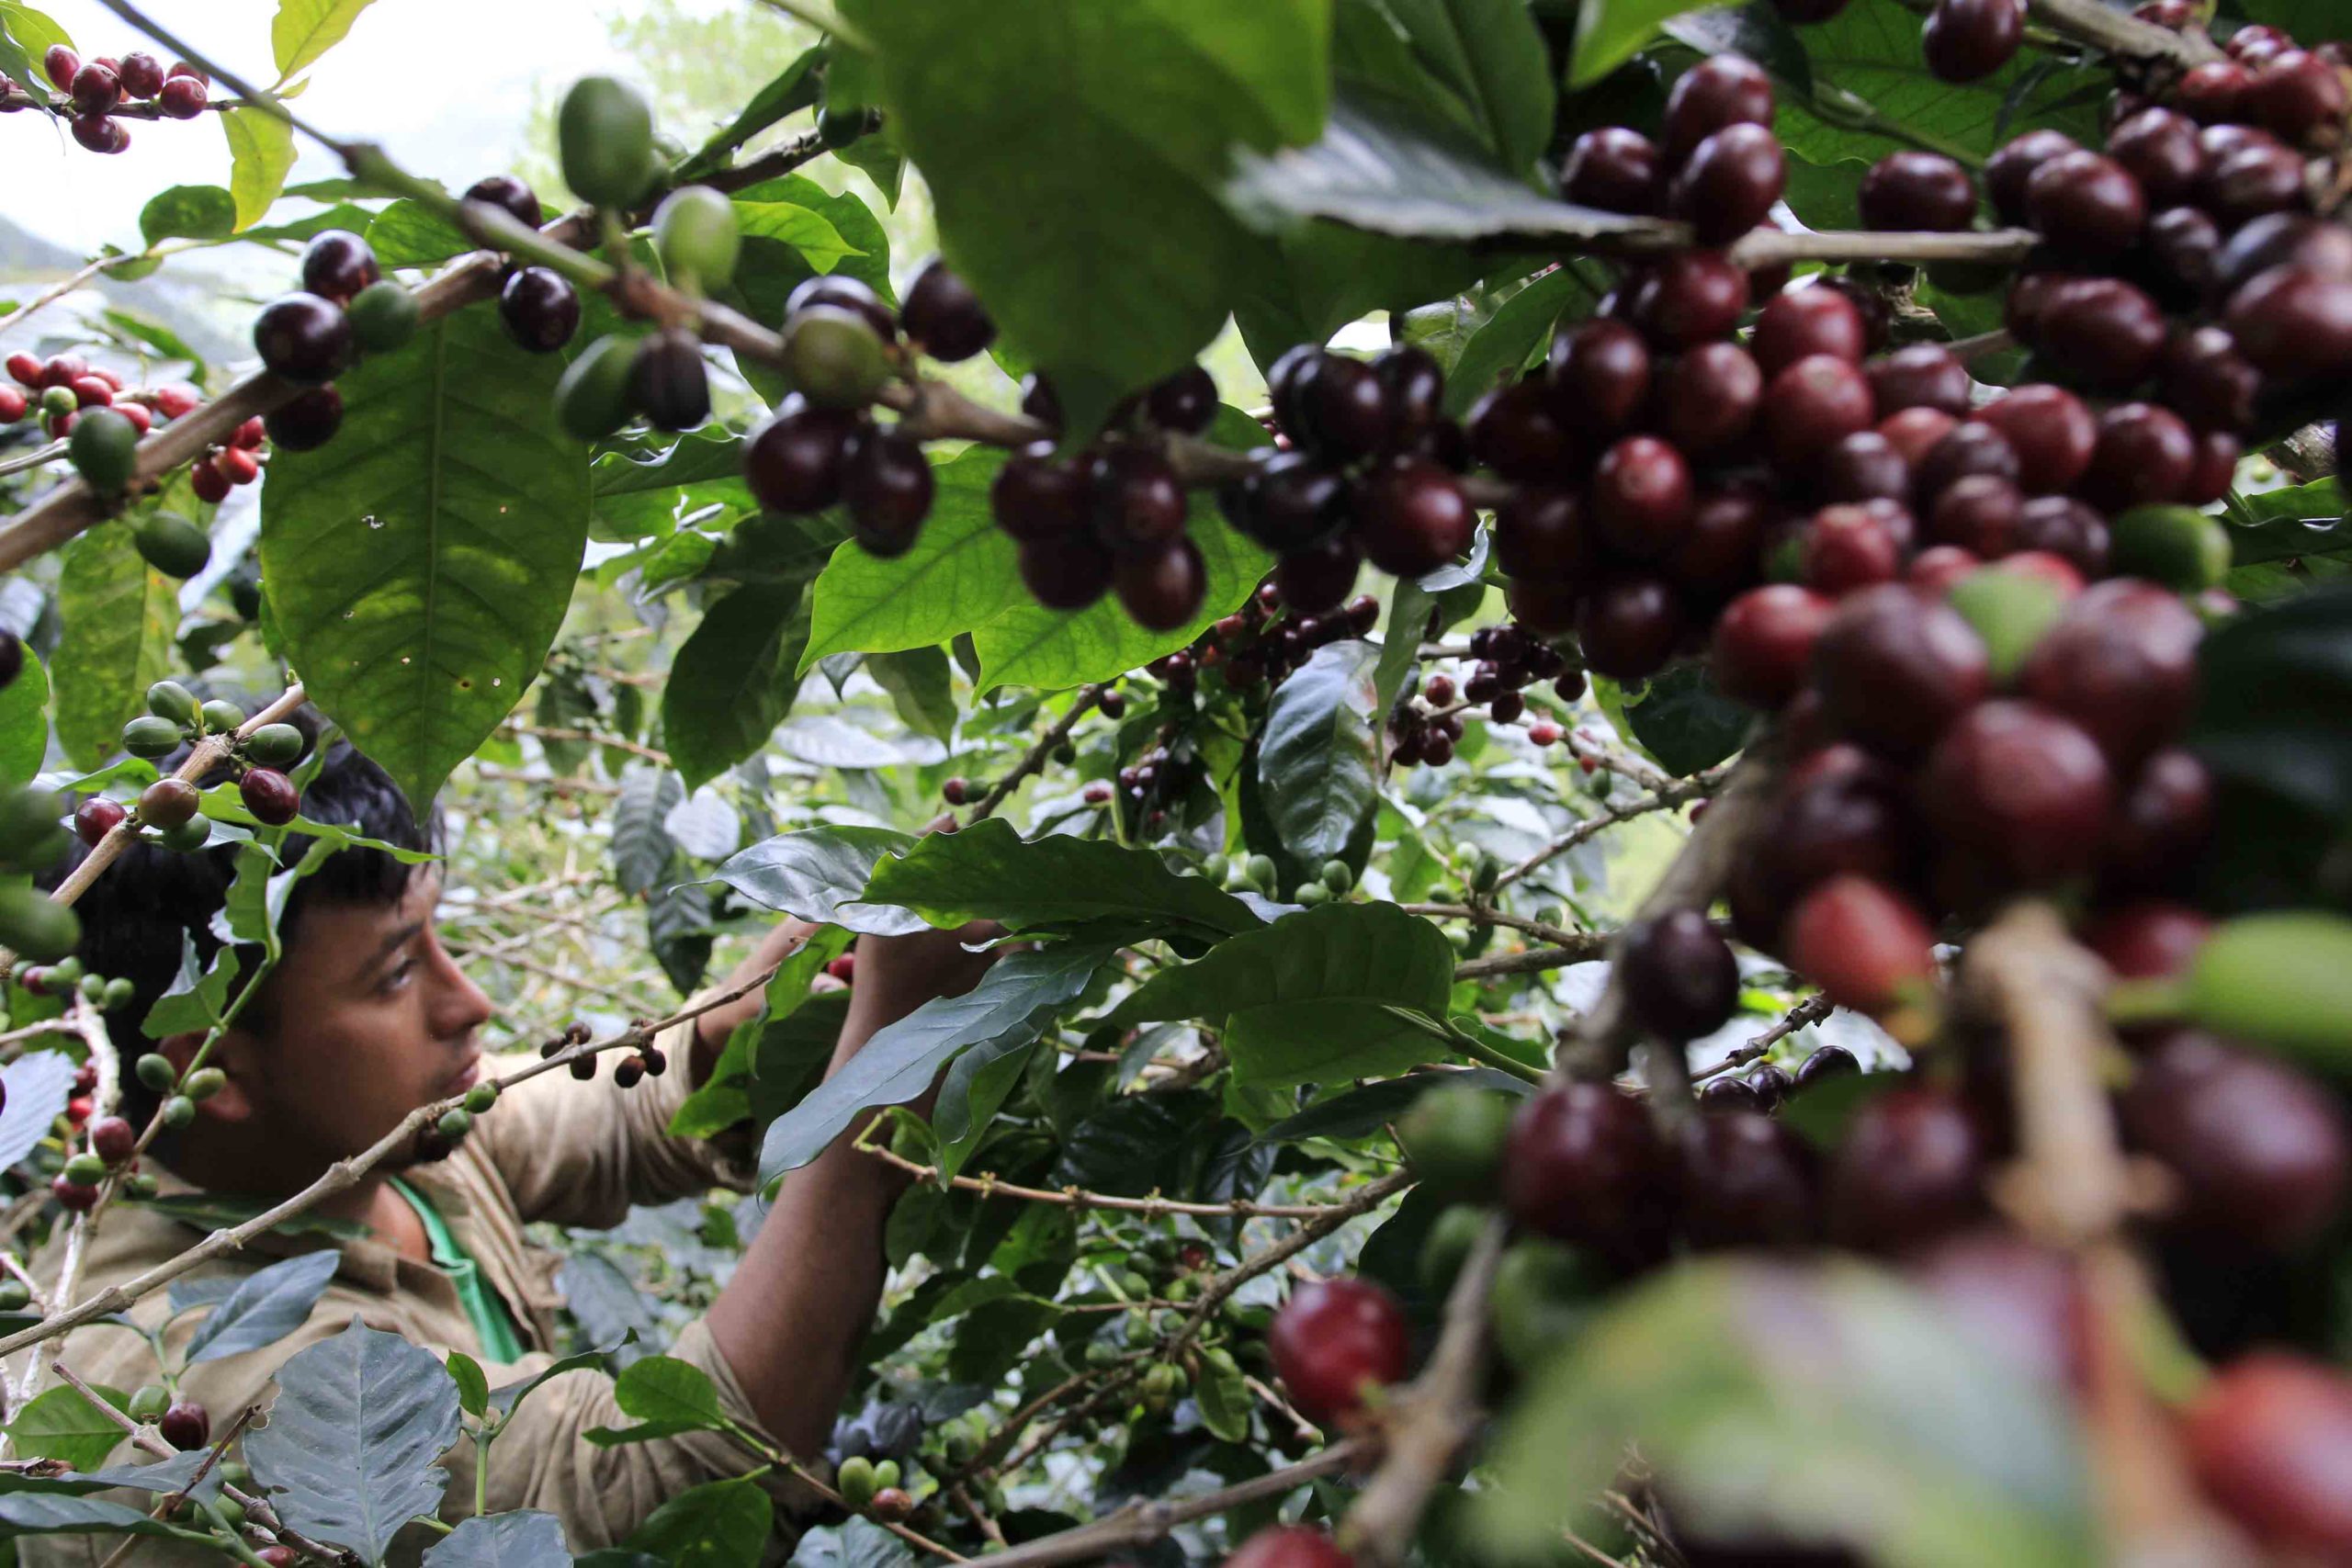 Los recolectores de café cortan la fruta que está bien madura, esta práctica permite obtener un producto de mejor calidad. Foto CC/Amílcar Izaguirre